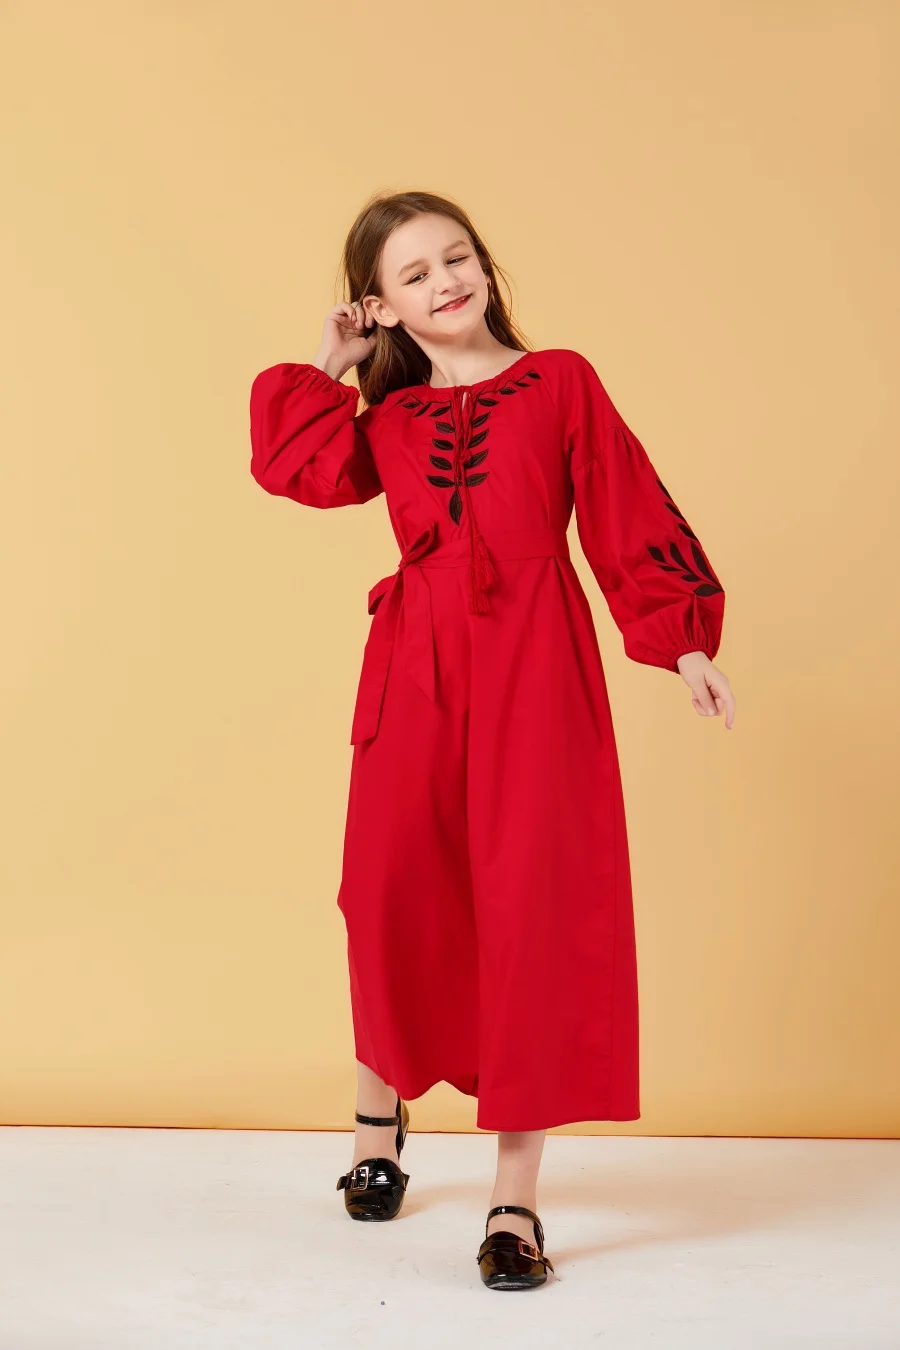 Семейный комплект одежды для мамы и дочки; длинное платье красного размера плюс; повседневные мусульманские Семейные комплекты; шикарные Макси-платья с вышивкой